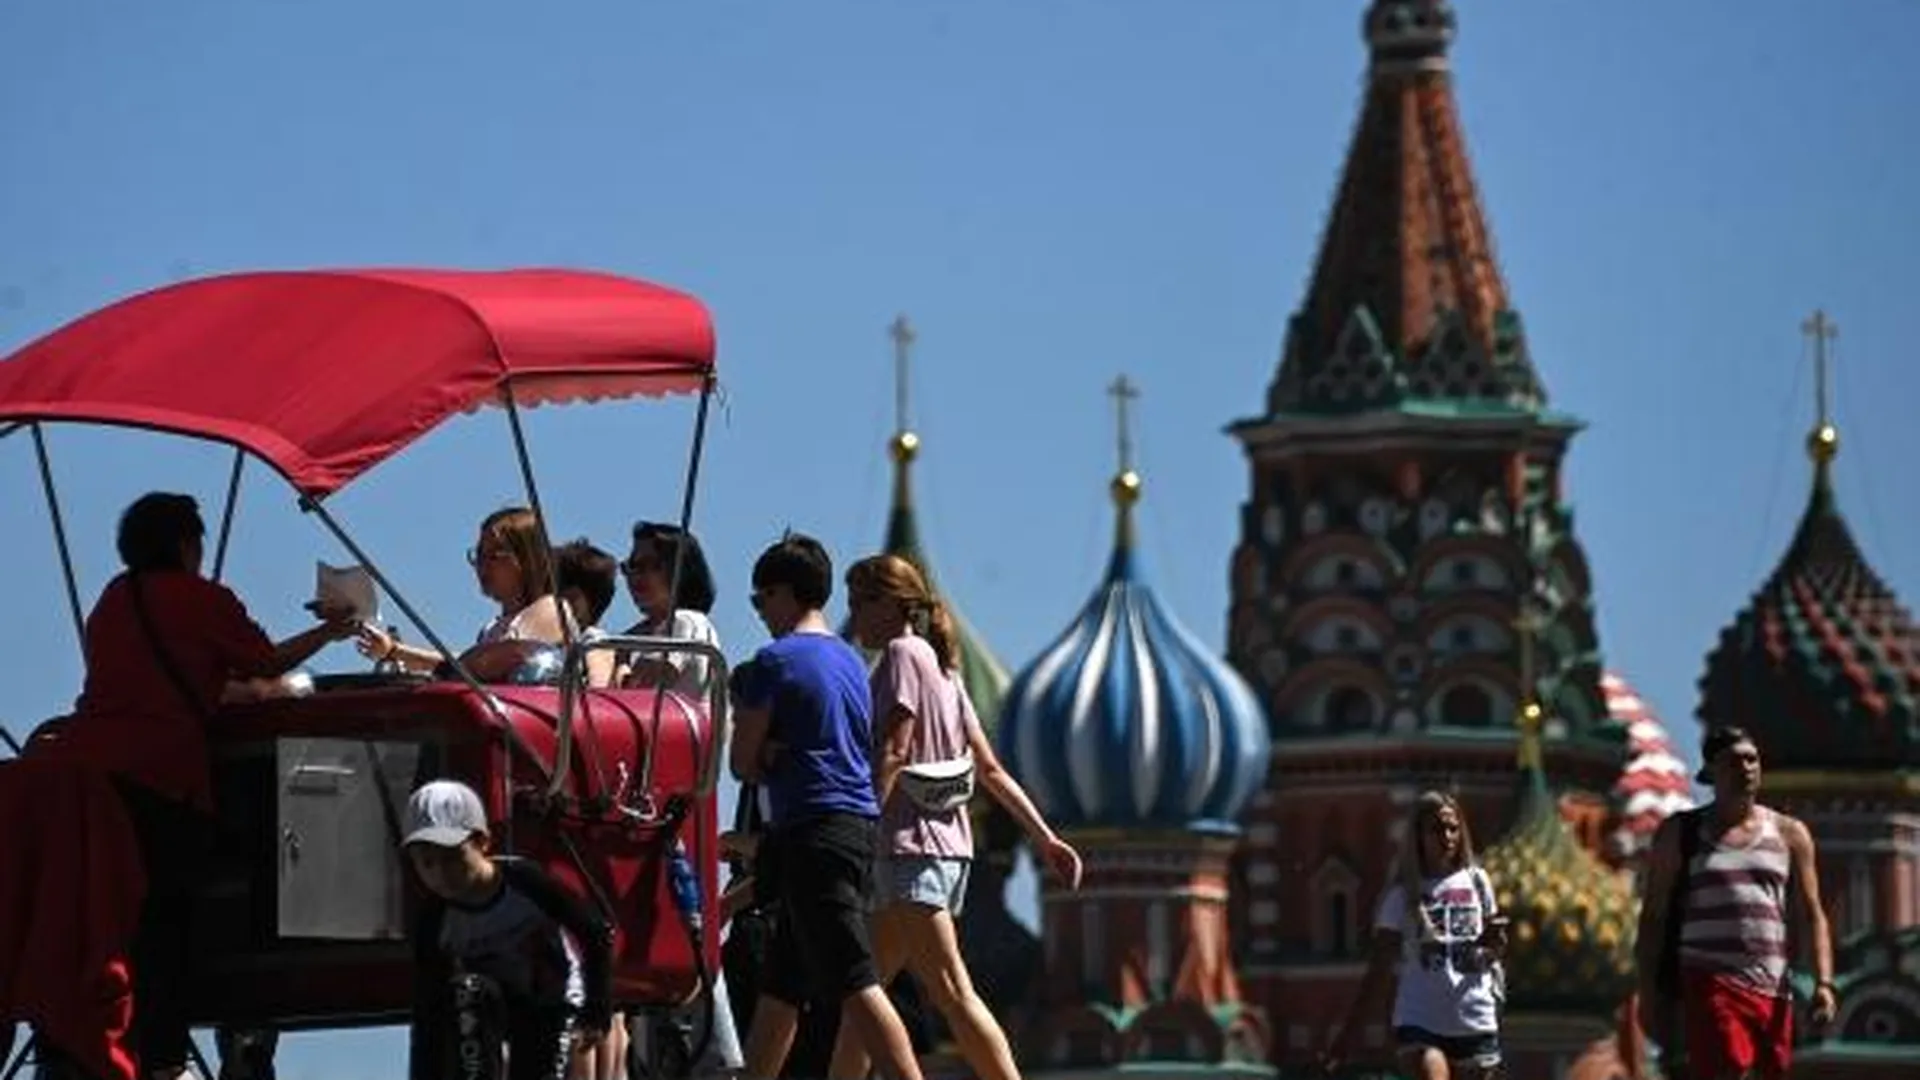 Люди у ларька «Напитки и мороженое» на Красной пощади в Москве